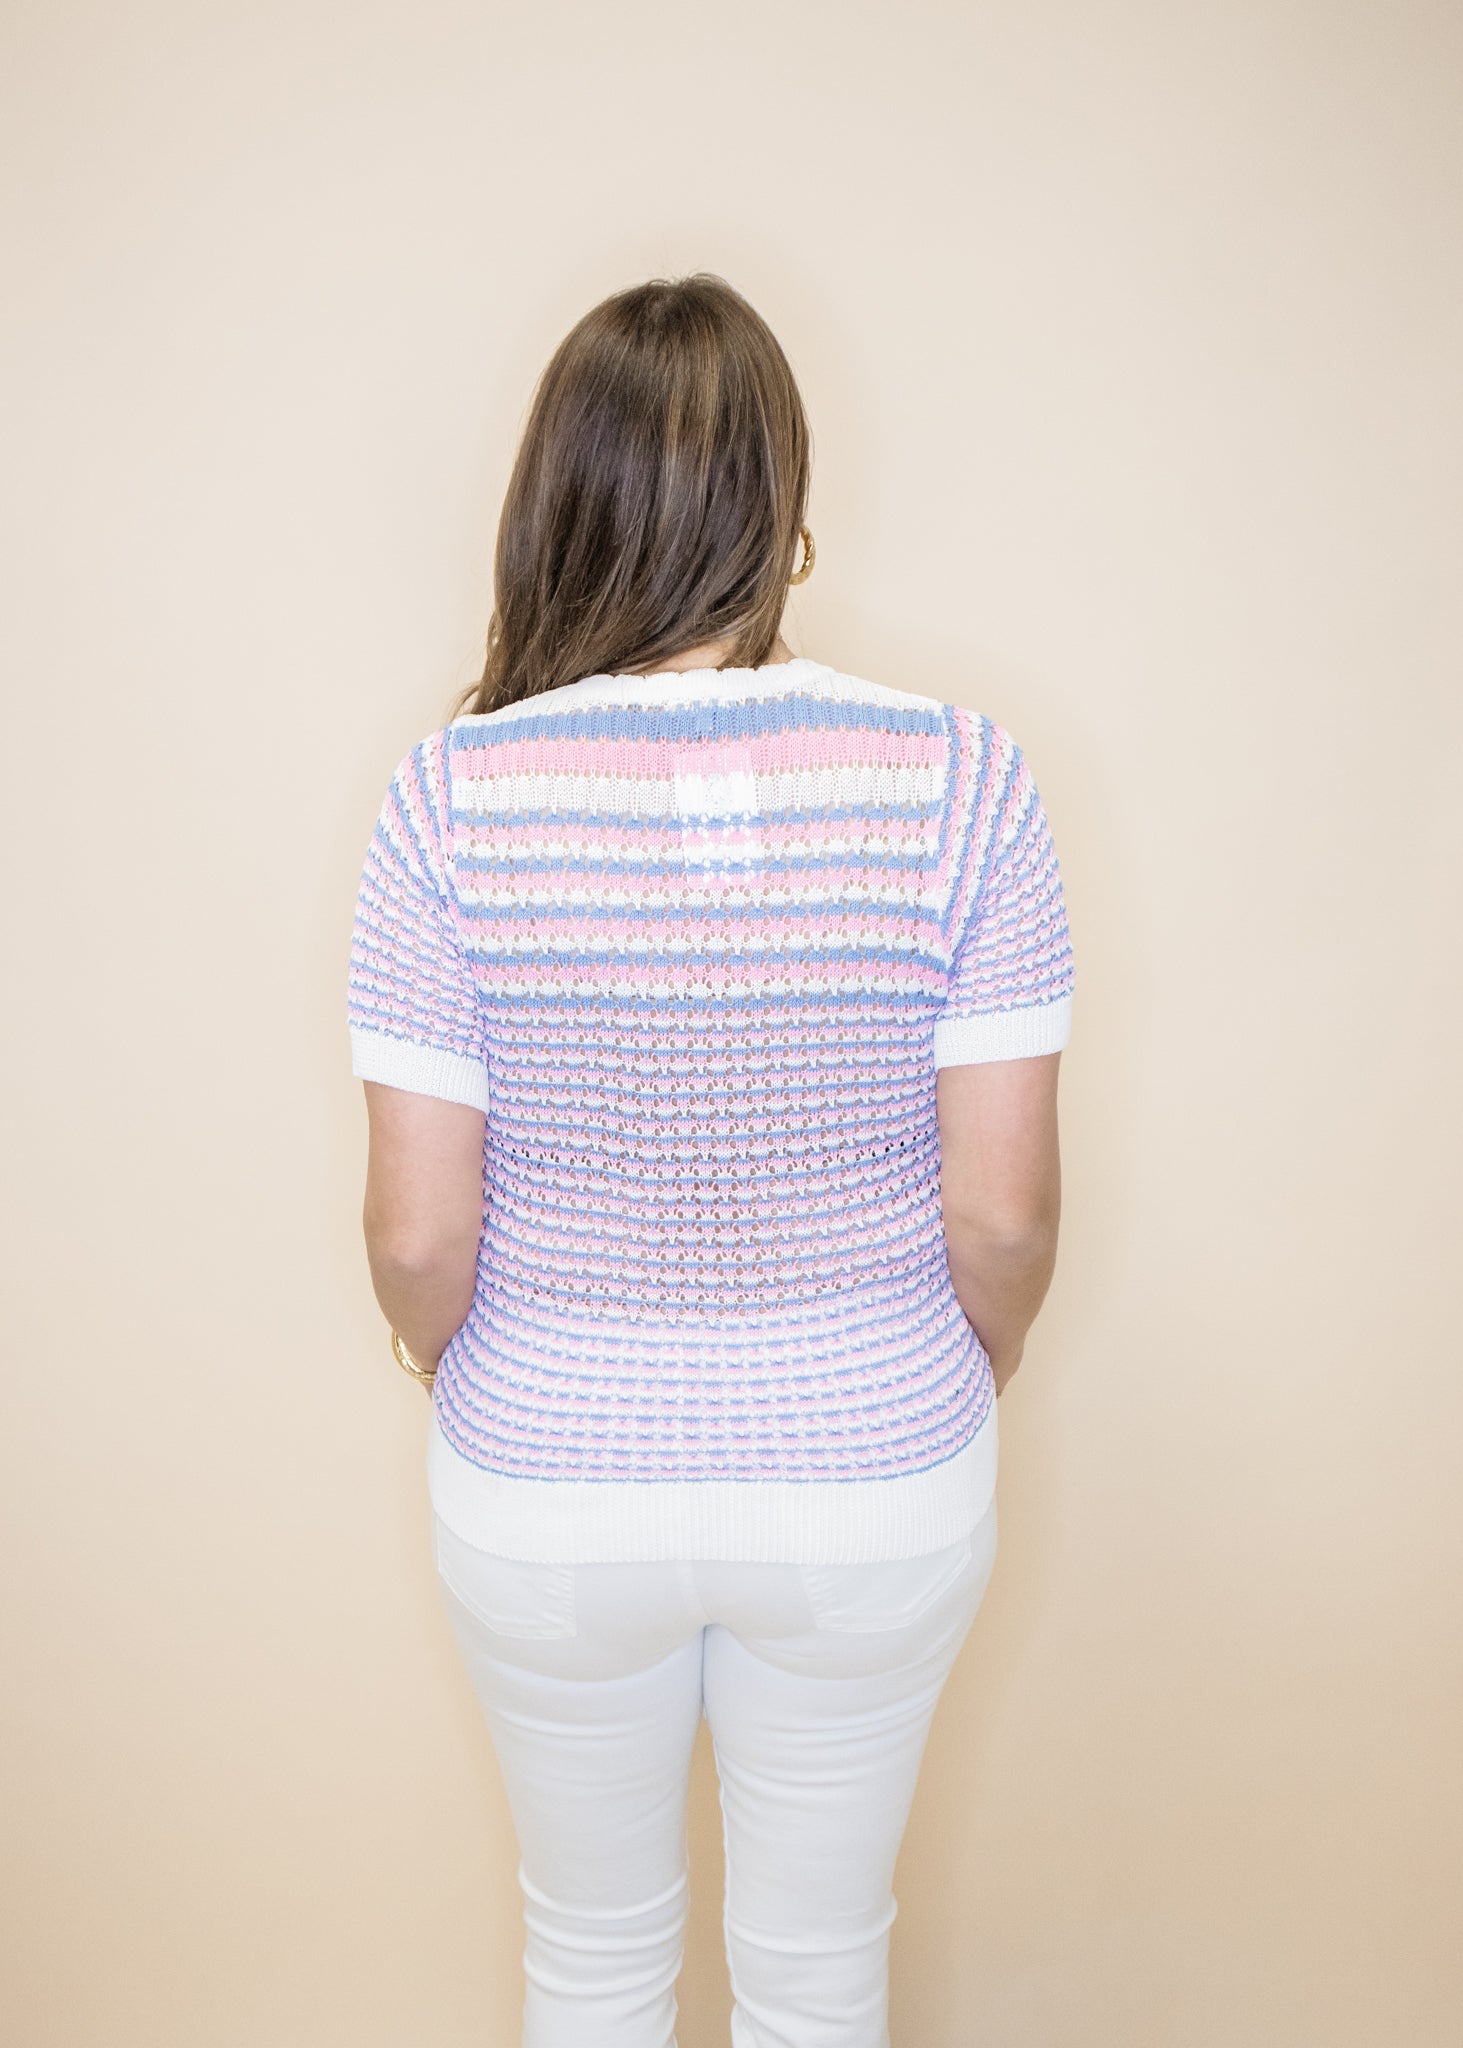 Pastel Stripe Crochet Top